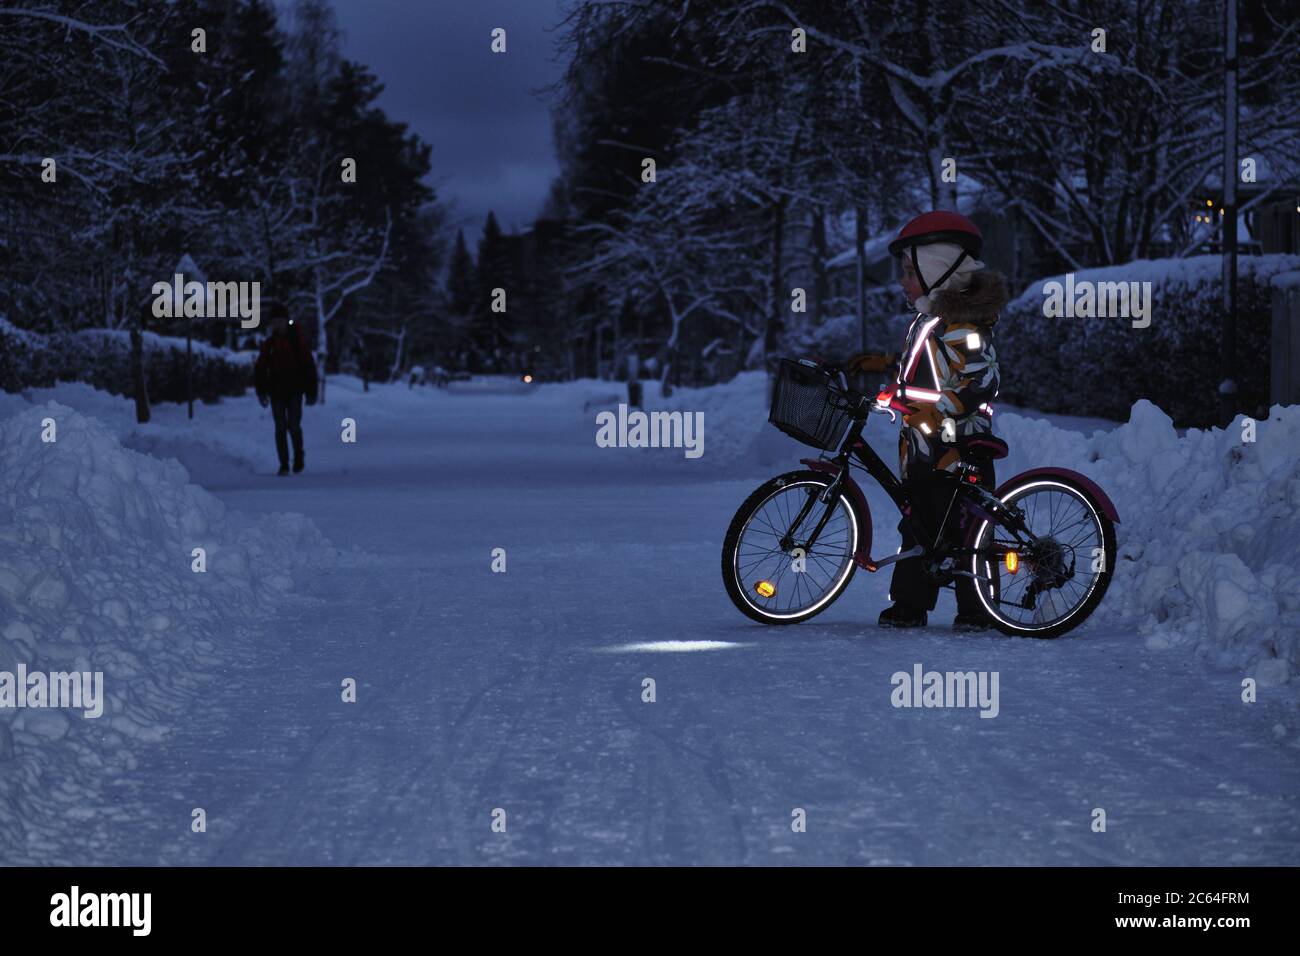 Kinder auf dem Fahrrad in einem Winterabend. Das Licht wird von Reflektoren  der Kleidung reflektiert. Sicheres Radfahren in der dunklen Zeit  Stockfotografie - Alamy